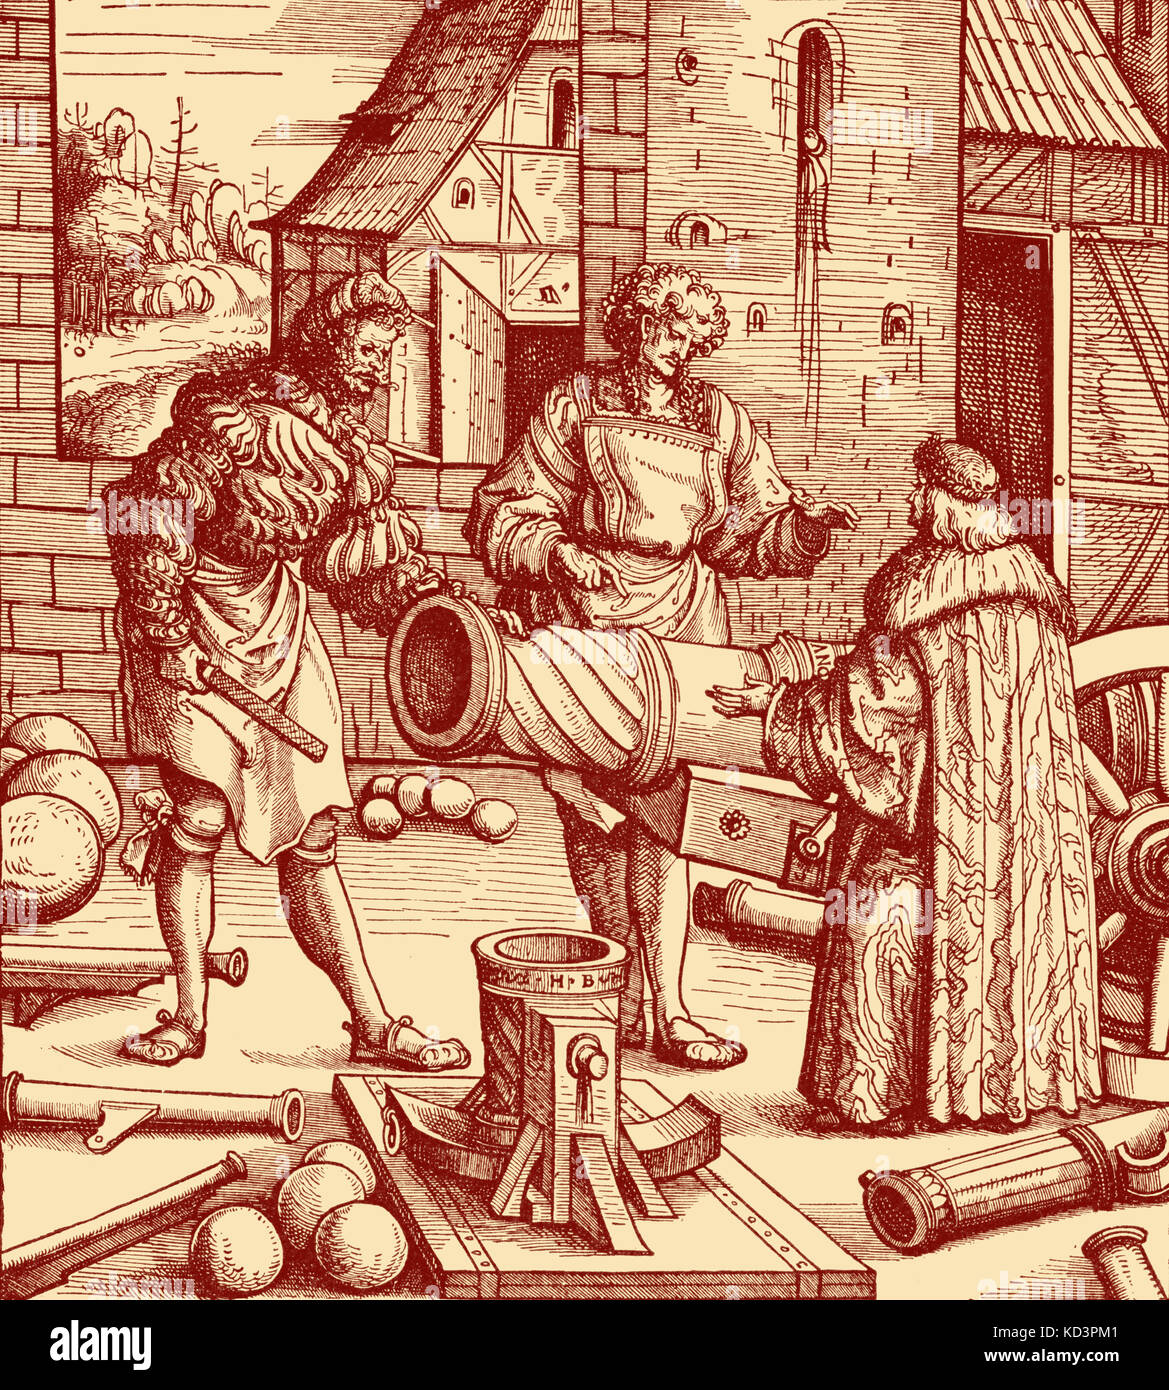 Fonderie con canone. Canon usato nell'esercito di Massimiliano. Taglio di legno di Hans Burgkmair- 1473 - 1531. Massimiliano i d'Asburgo , Imperatore Romano - 22 marzo 1459 - 12 gennaio 12 1519. Foto Stock